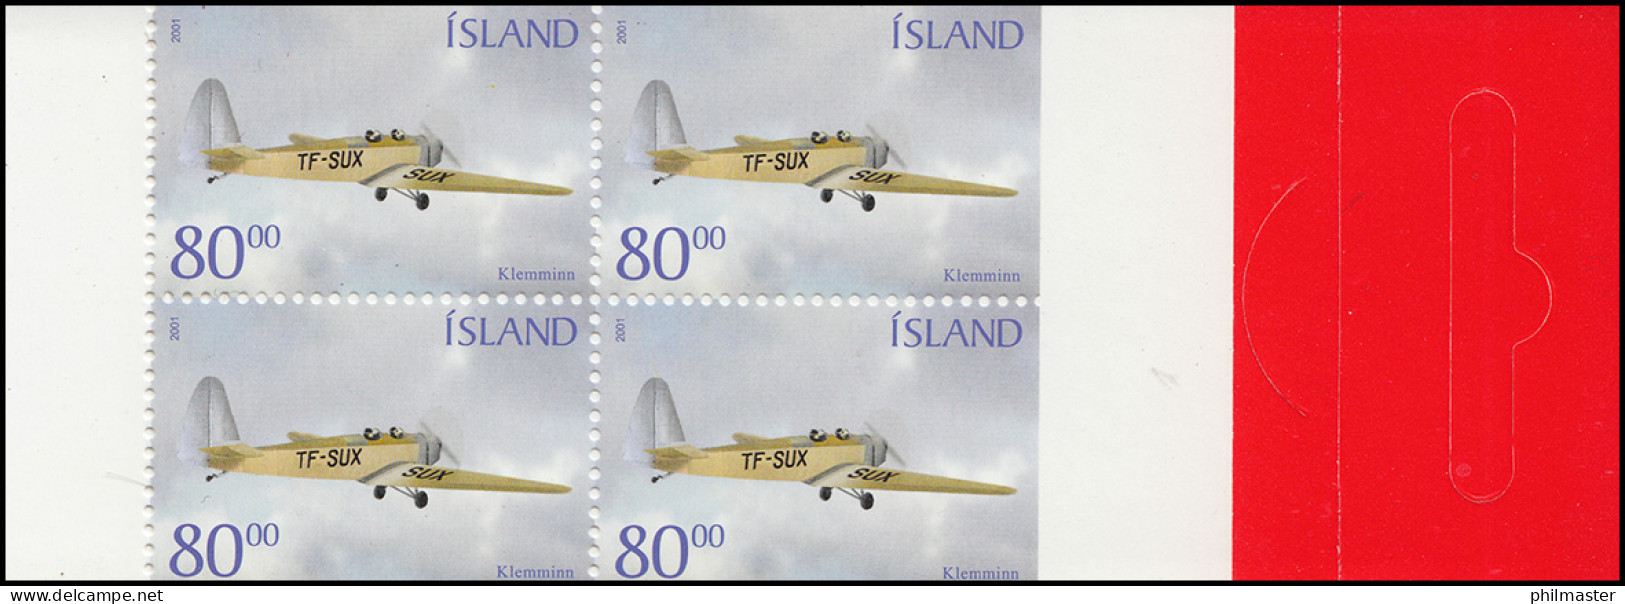 Island Markenheftchen 980 Historische Flugzeuge: TF-SUX, ** - Booklets